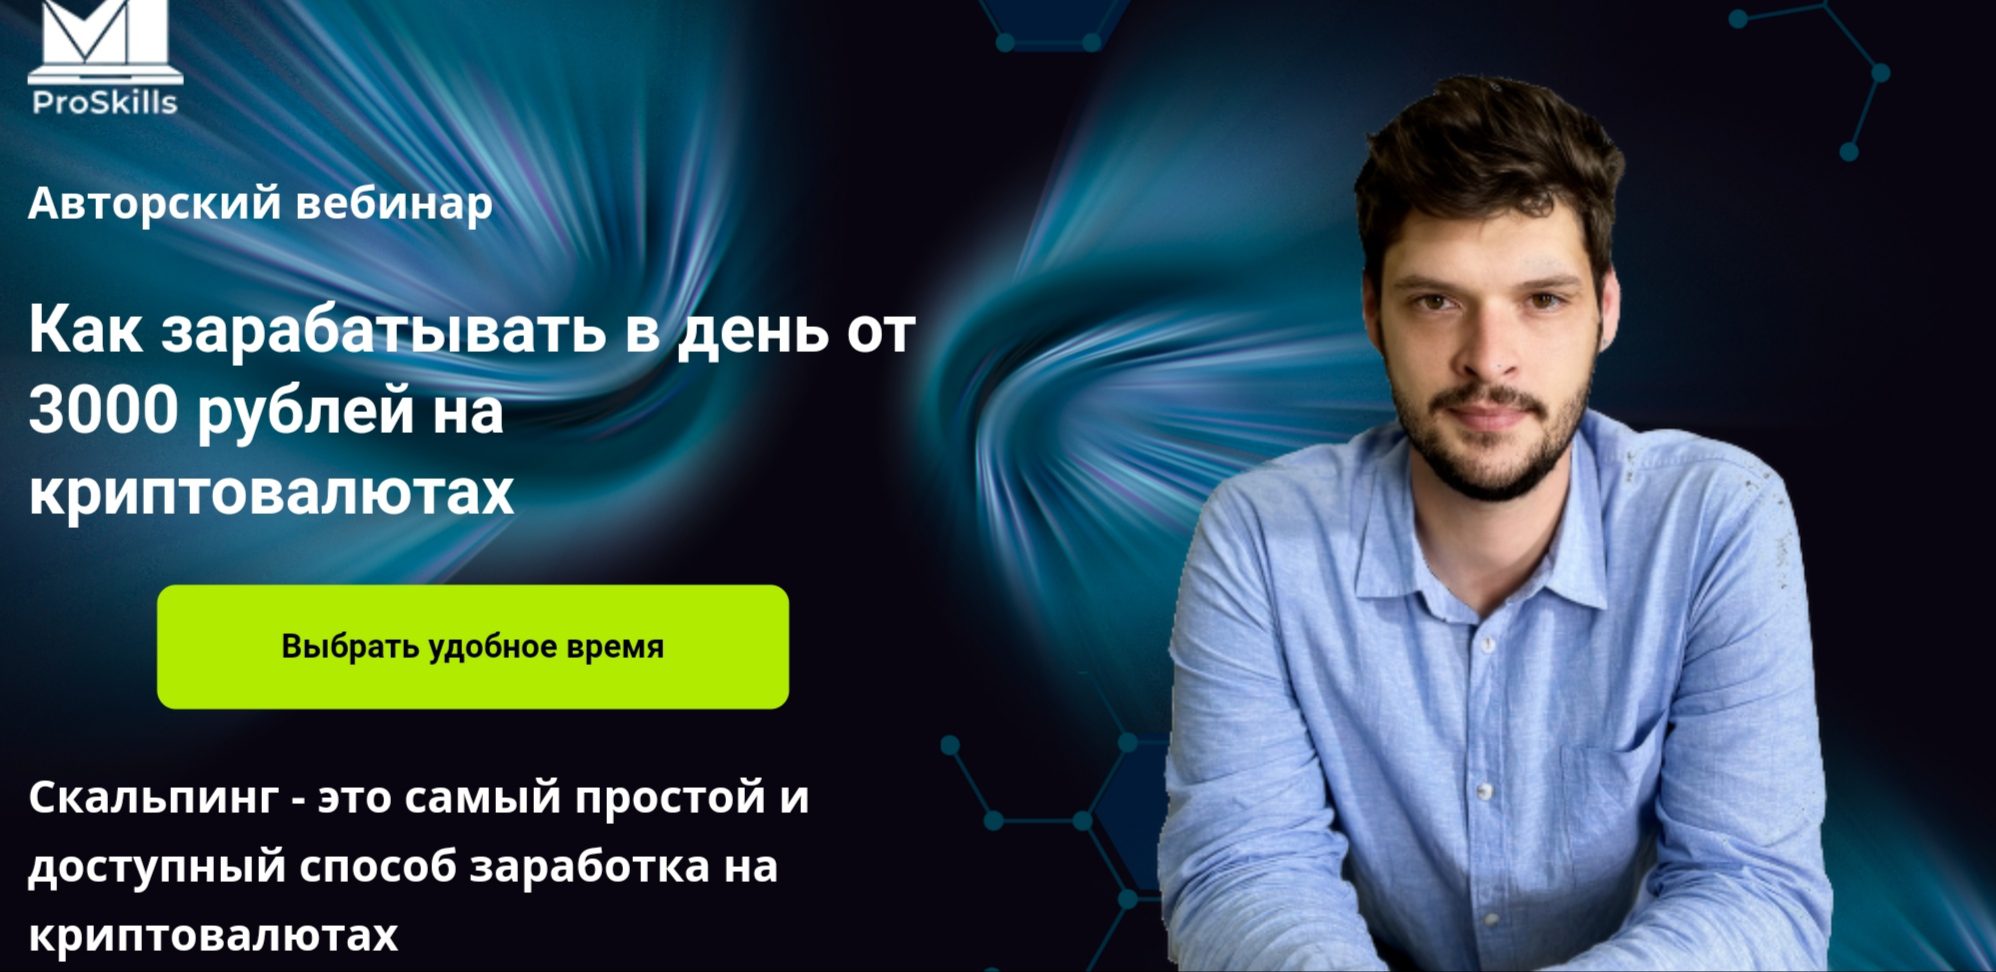 Pro2skill.ru сайт